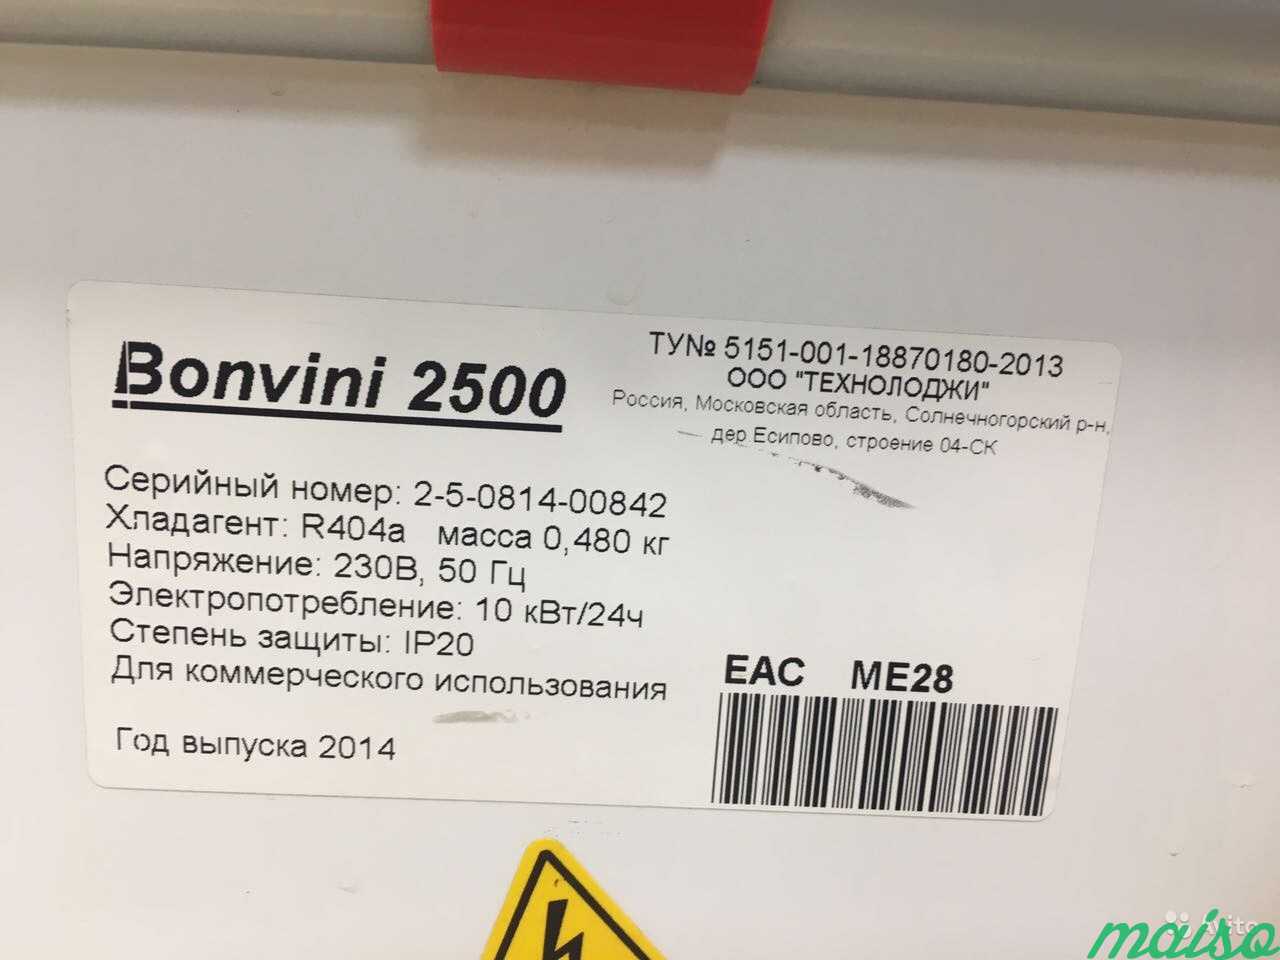 Ларь-бонета Bonvini 2500 в Москве. Фото 3